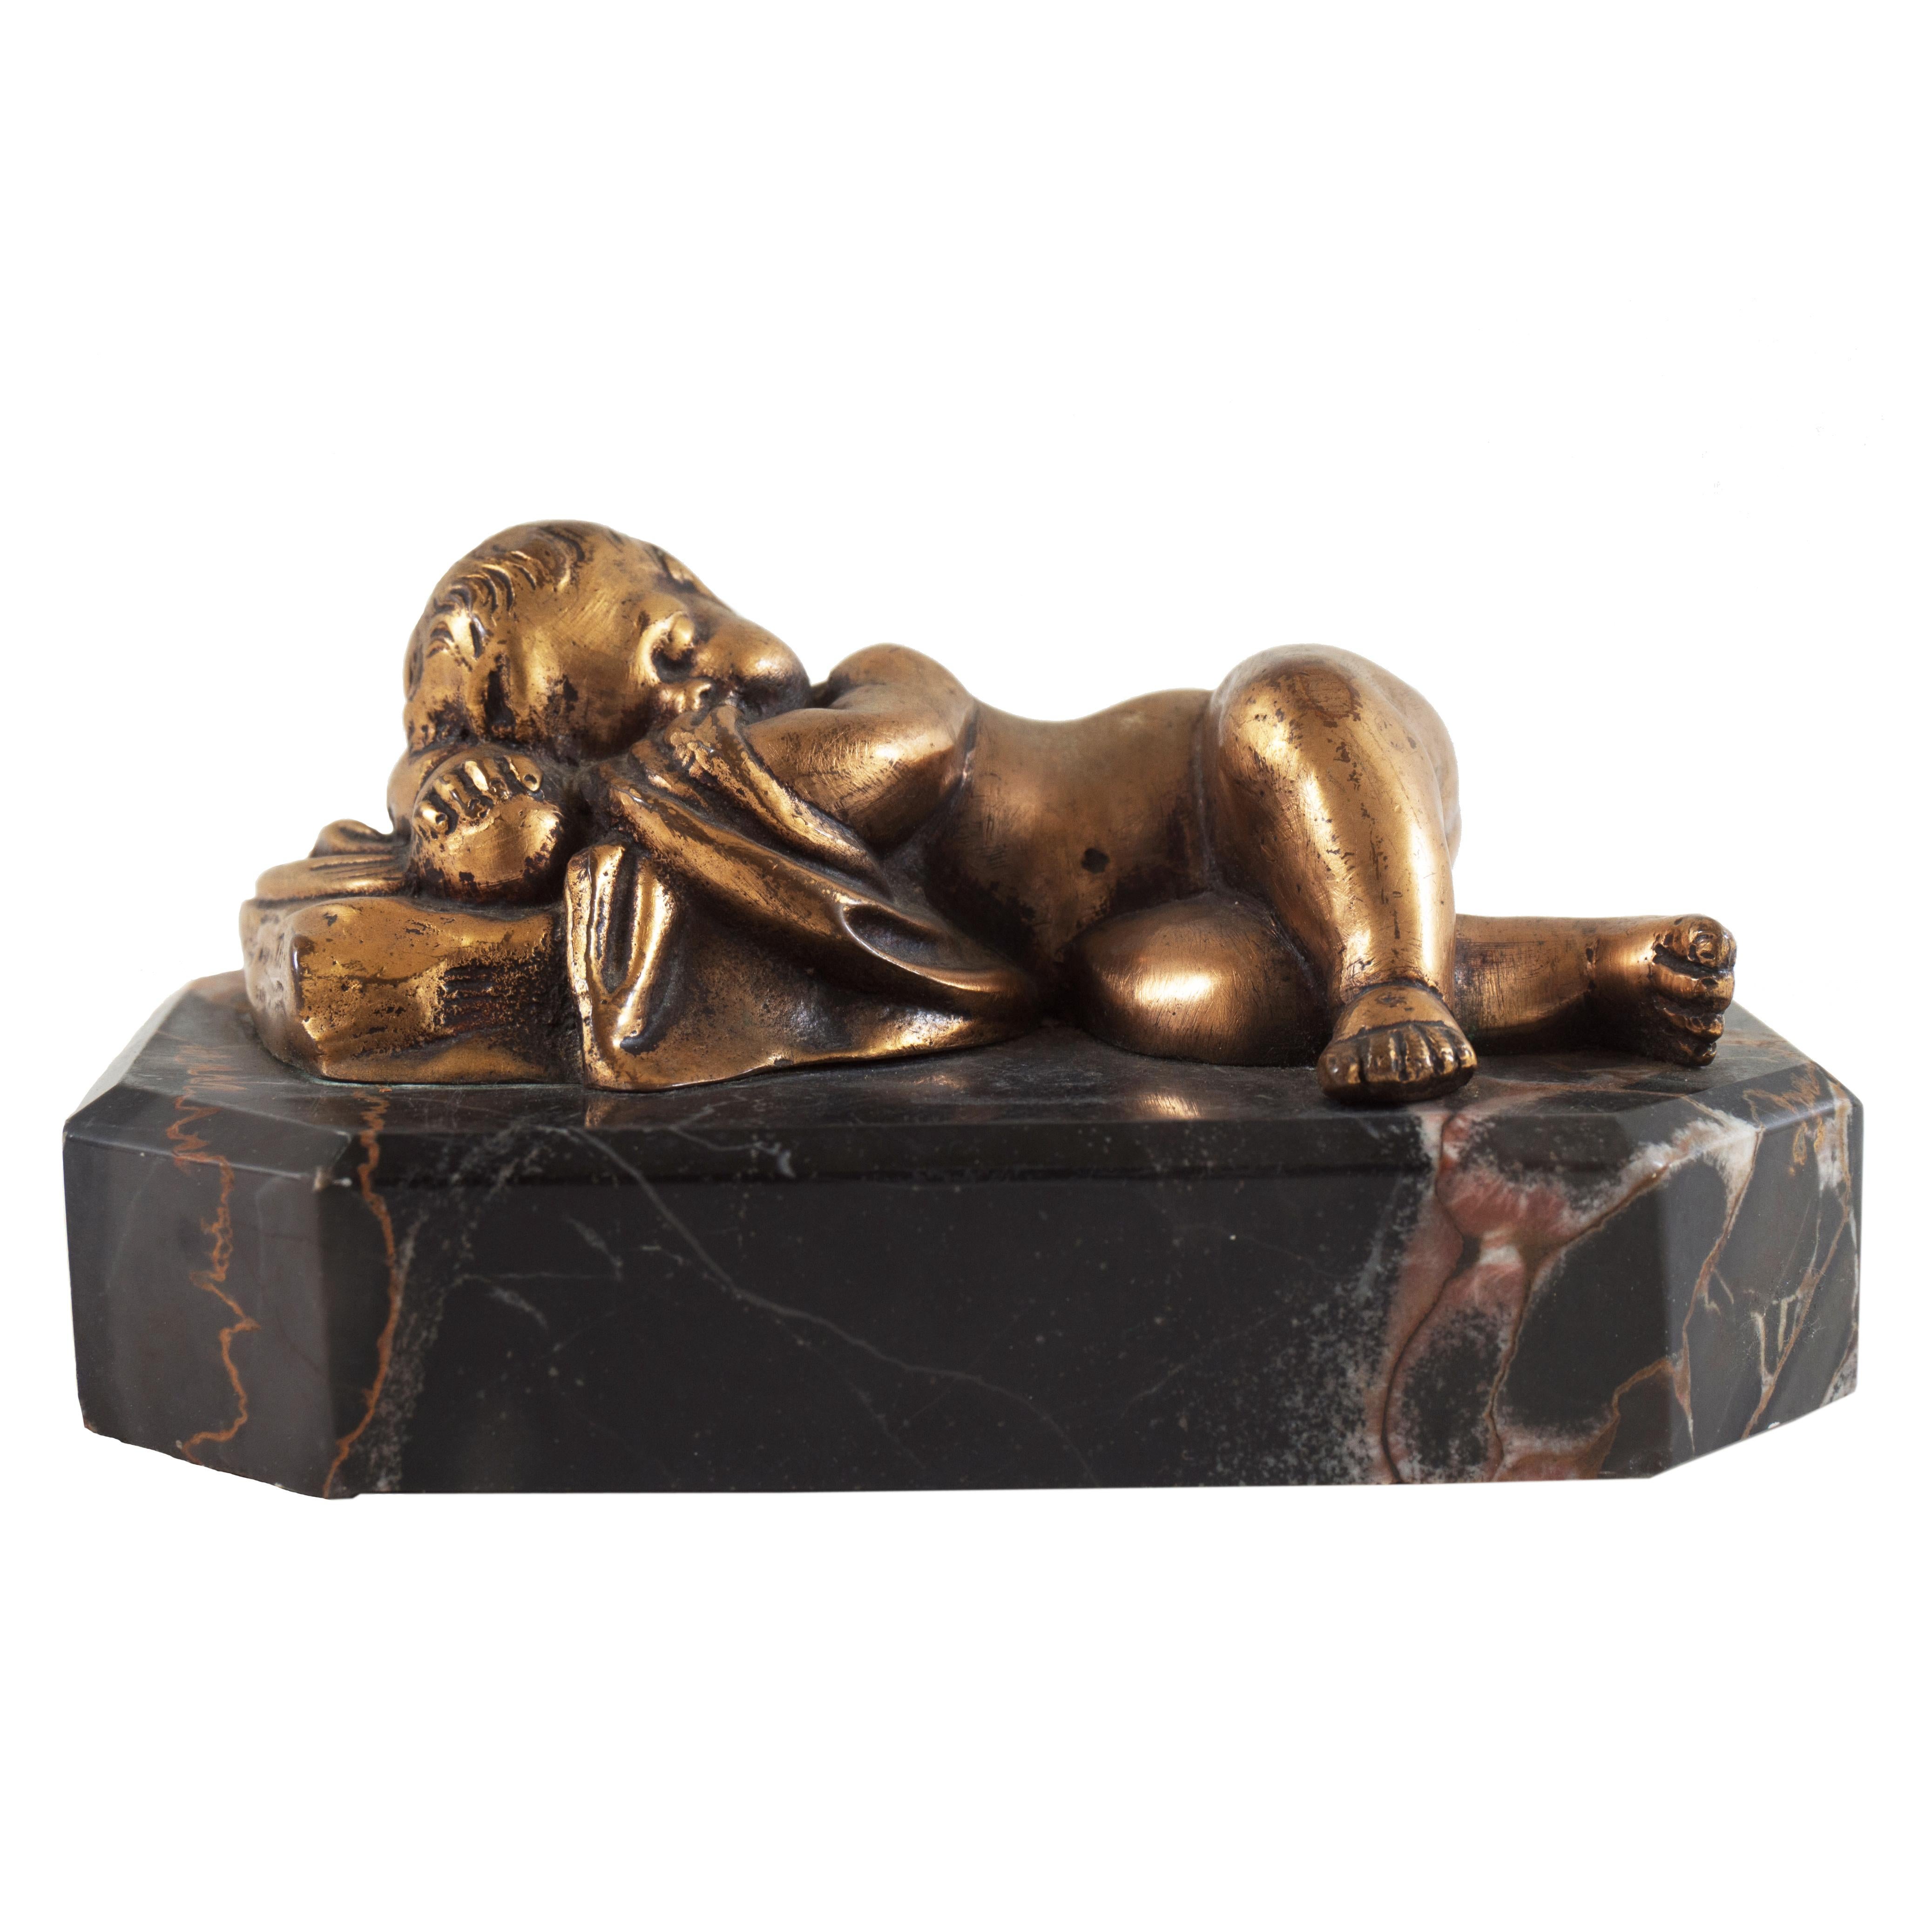  Kleine Beaux-Arts-Skulptur „Sleeping Cherub“ aus vergoldeter Bronze auf Portoro-Marmorsockel – Sculpture von Unknown